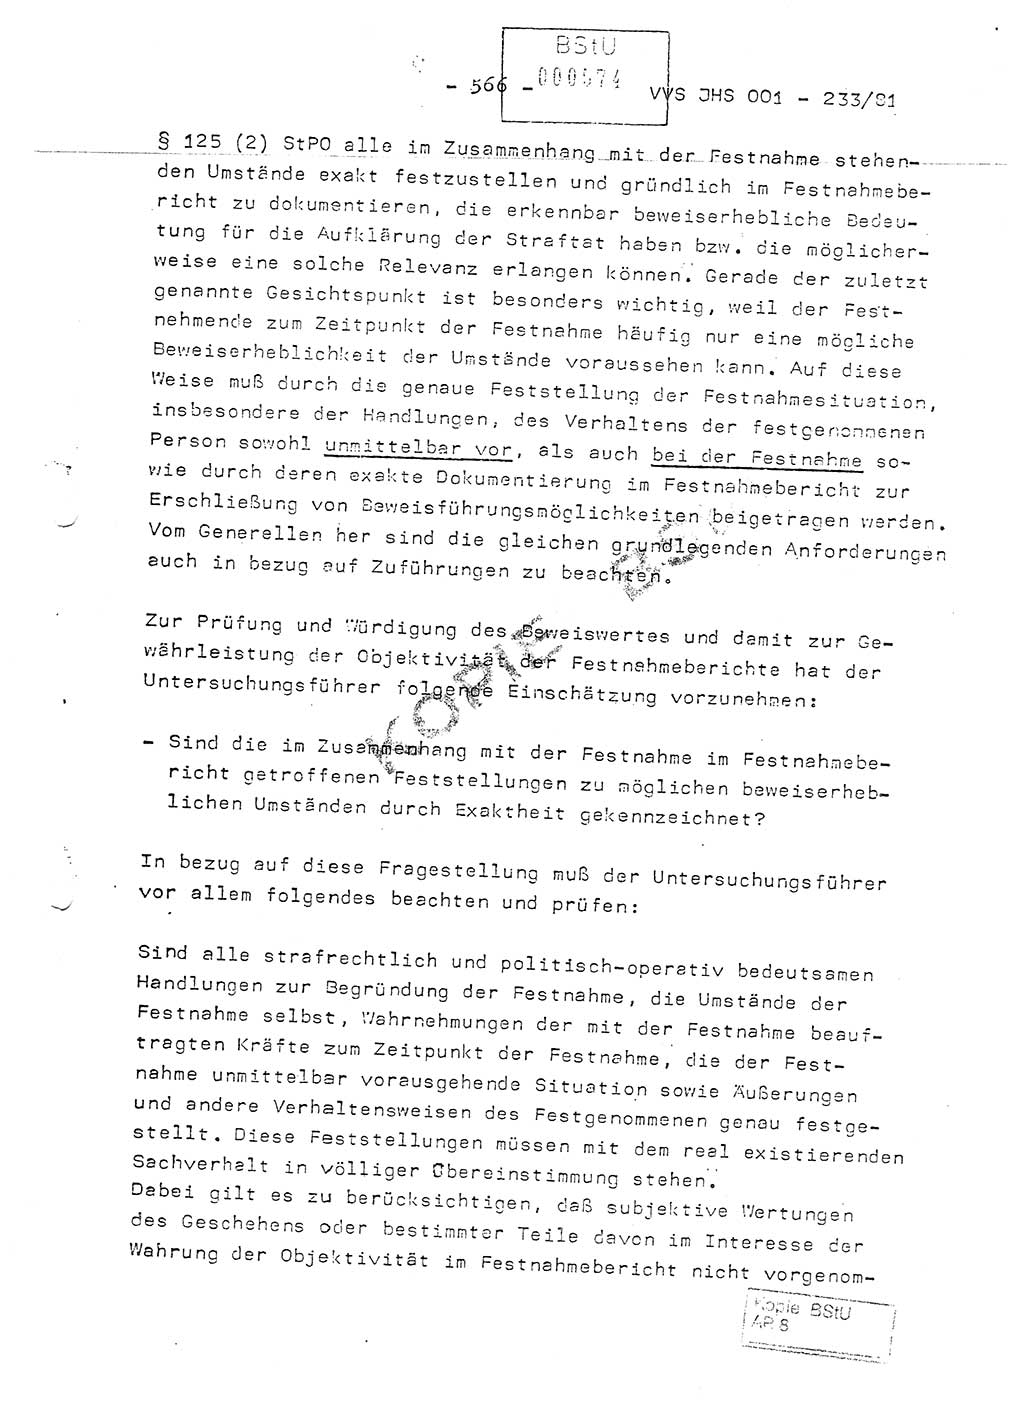 Dissertation Oberstleutnant Horst Zank (JHS), Oberstleutnant Dr. Karl-Heinz Knoblauch (JHS), Oberstleutnant Gustav-Adolf Kowalewski (HA Ⅸ), Oberstleutnant Wolfgang Plötner (HA Ⅸ), Ministerium für Staatssicherheit (MfS) [Deutsche Demokratische Republik (DDR)], Juristische Hochschule (JHS), Vertrauliche Verschlußsache (VVS) o001-233/81, Potsdam 1981, Blatt 566 (Diss. MfS DDR JHS VVS o001-233/81 1981, Bl. 566)